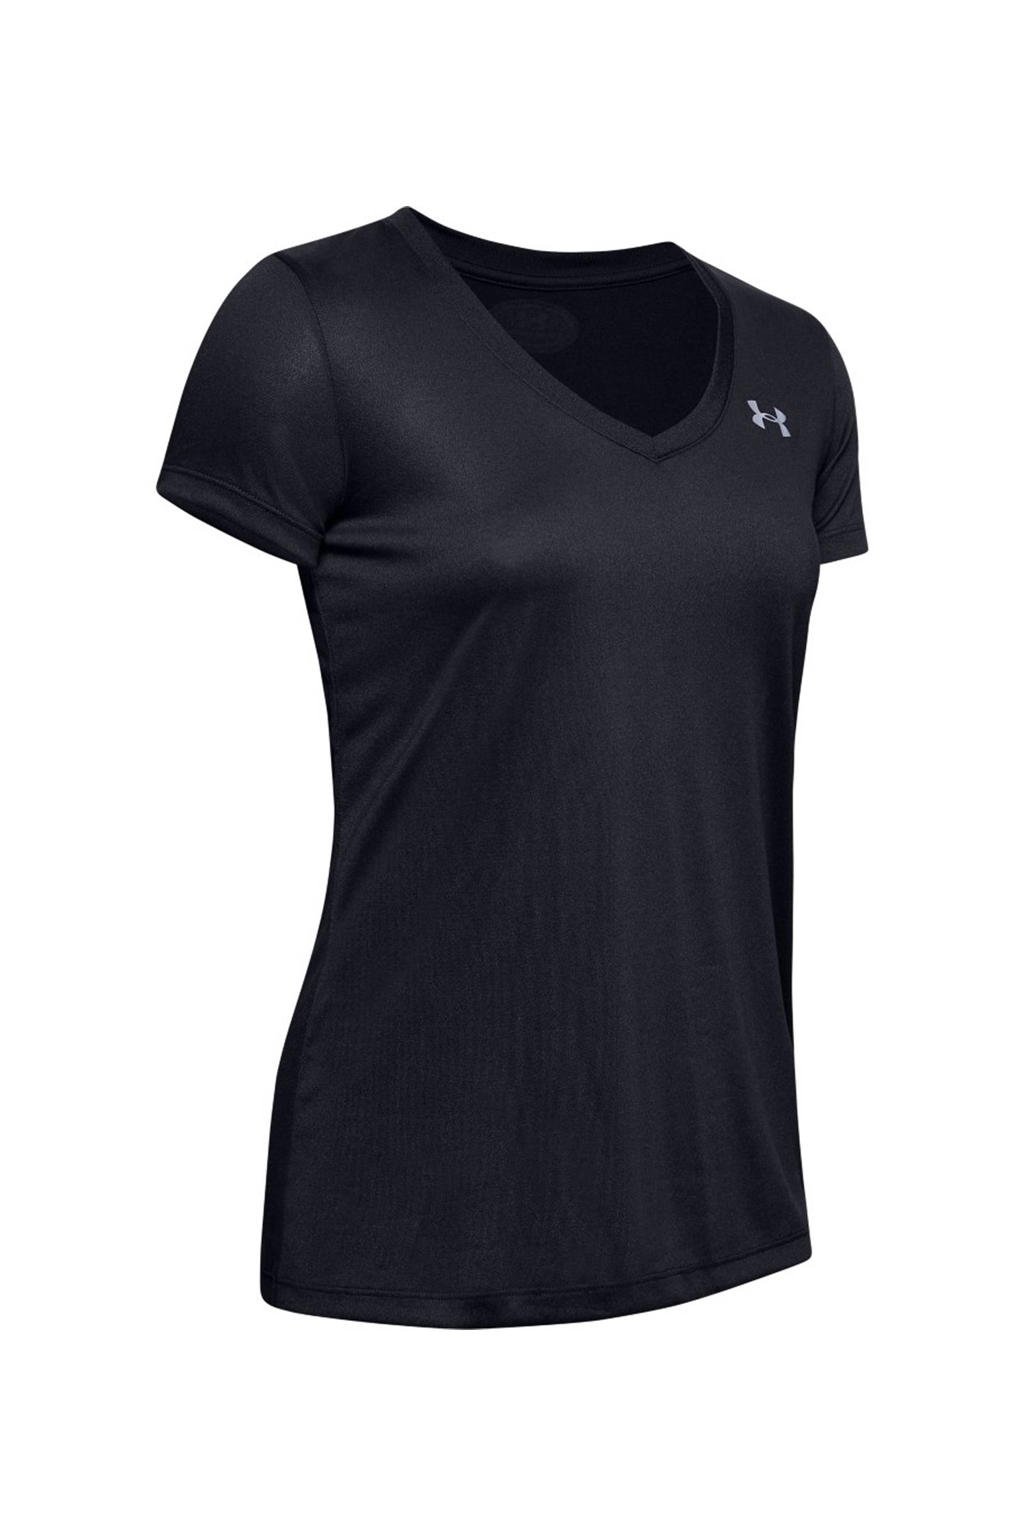 Zwart en grijze dames Under Armour sport T-shirt van polyester met korte mouwen en V-hals